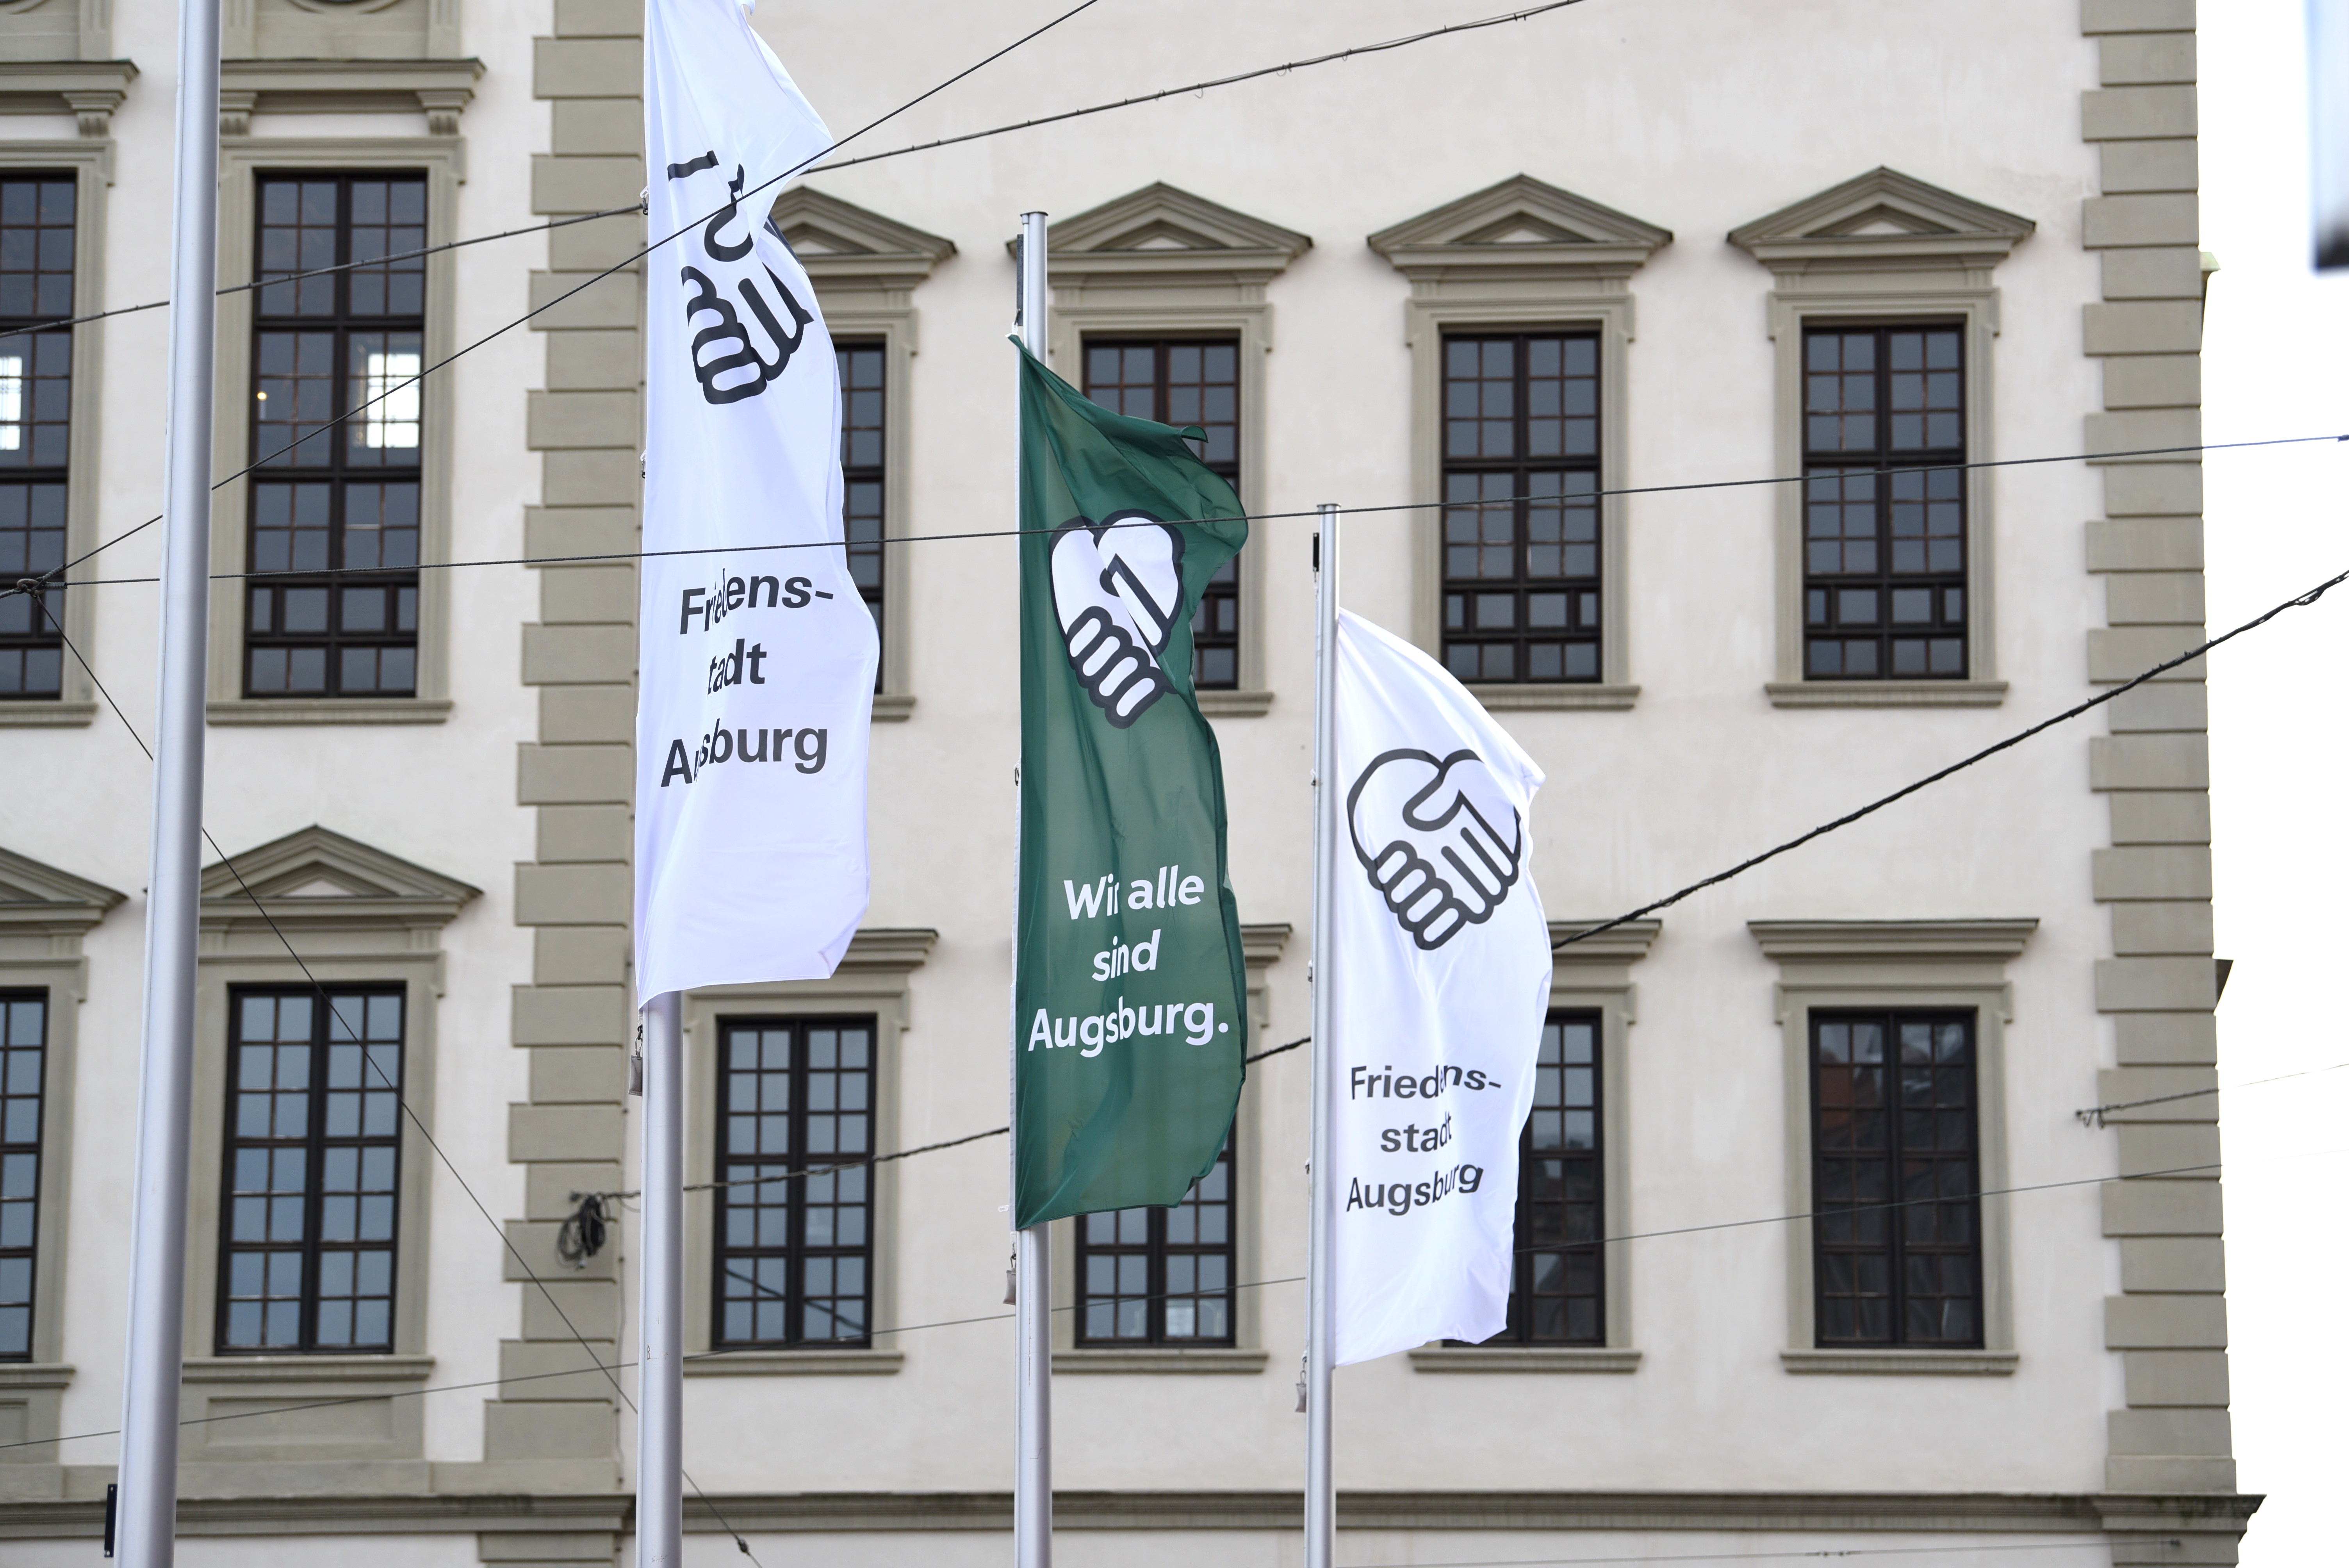 Vor dem Rathaus wehen drei Flaggen. Sie zeigen zwei Hände, die ein Herz formen. Links und rechts wehen weiße Flaggen, auf ihnen steht "Friedensstadt Augsburg". In der Mitte weht eine grüne Fahne, auf ihr steht "Wir alle sind Augsburg".